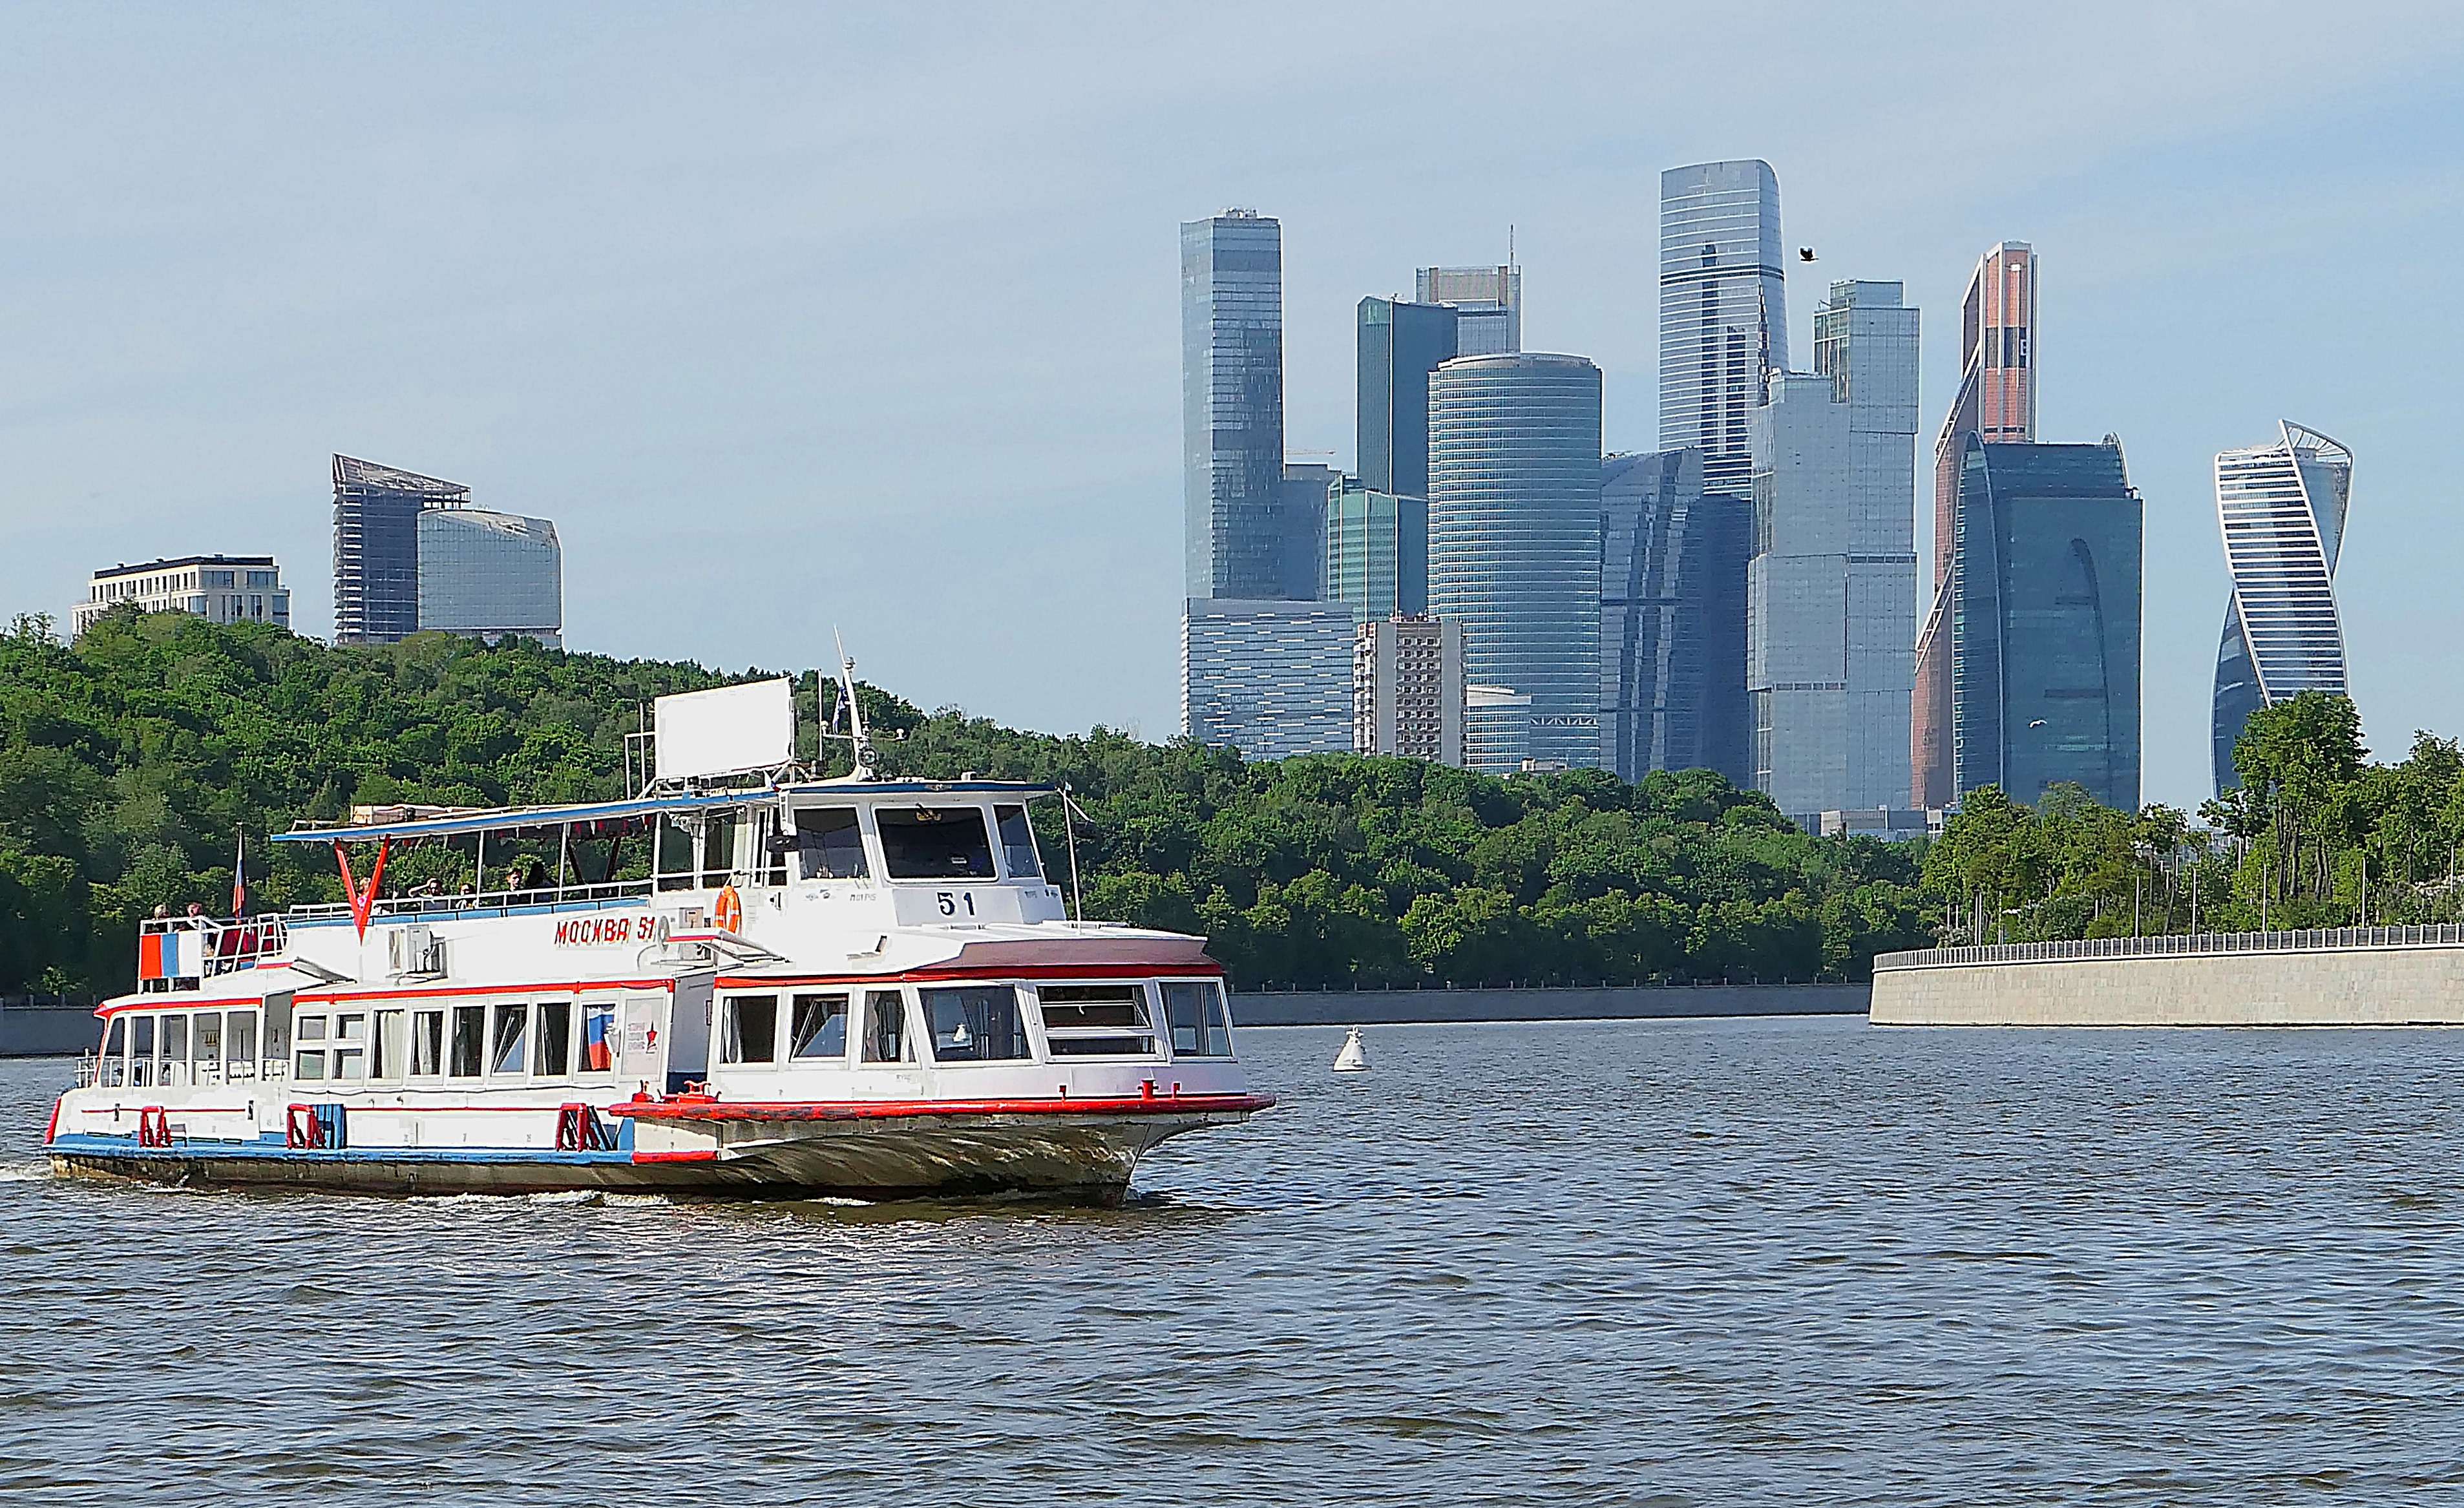 Москва-Сити и кораблик на реке. Фото Морошкина В.В.